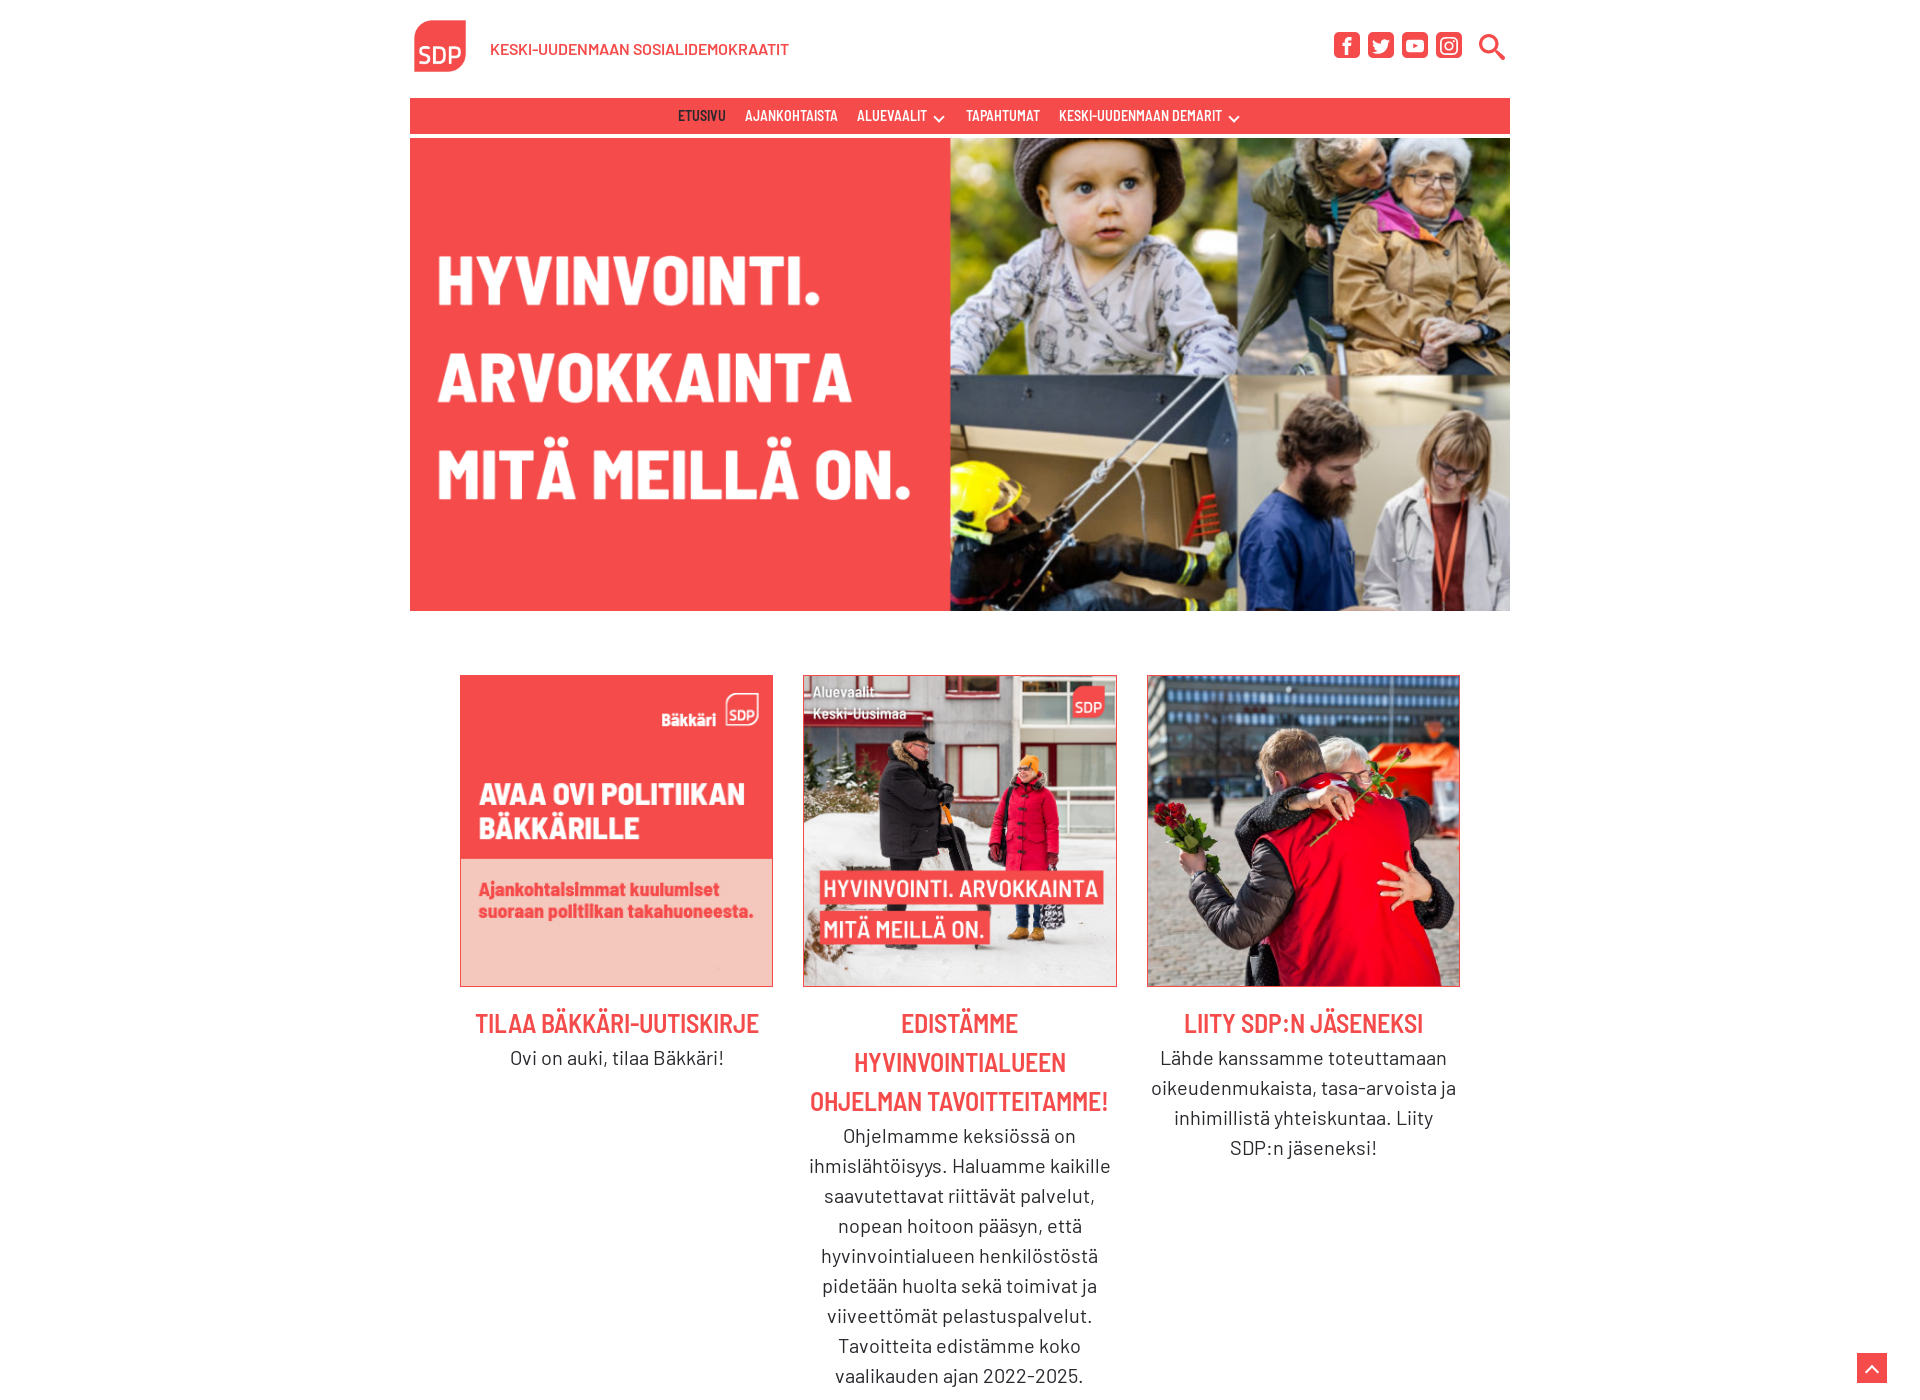 Näyttökuva keskiuudenmaandemarit.fi